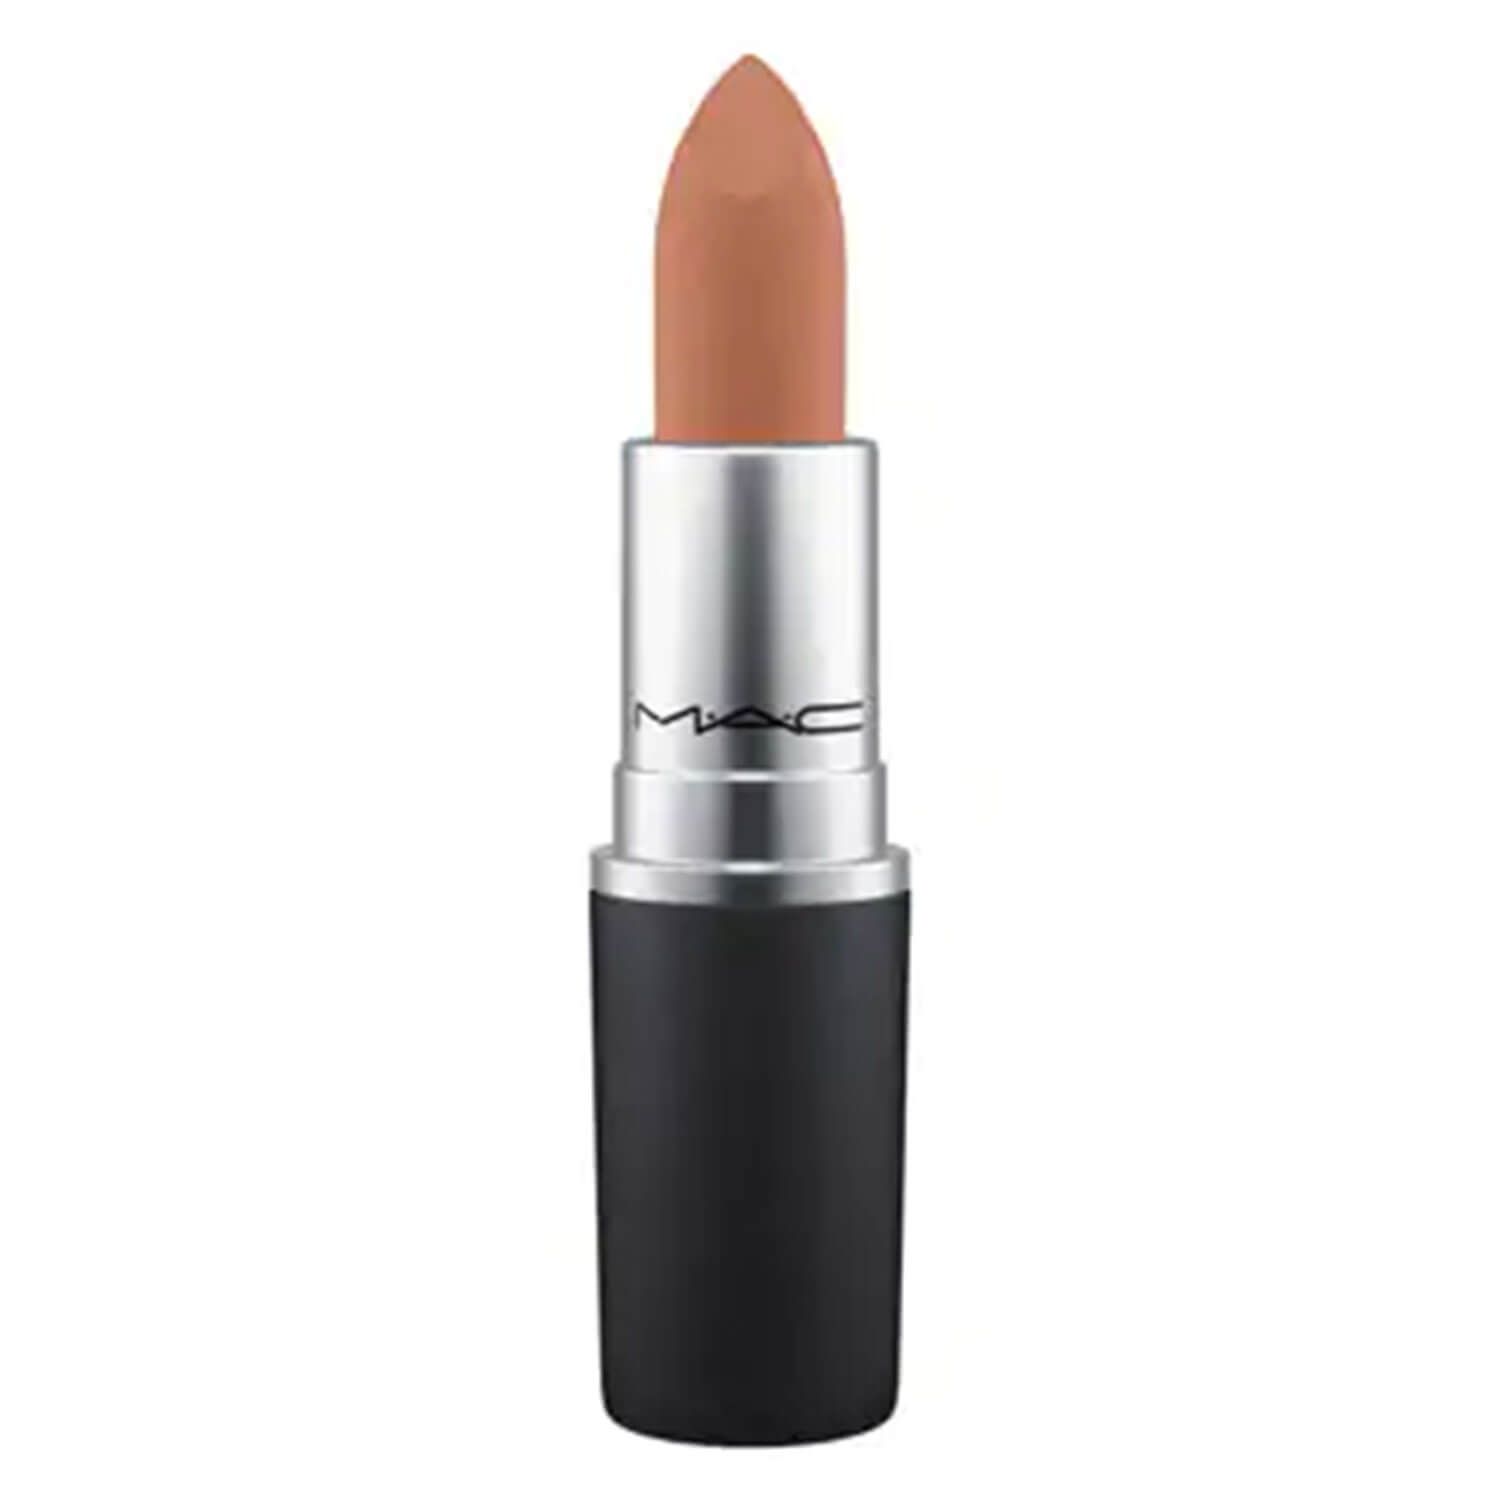 Produktbild von Powder Kiss - Sheermatte Lipstick Impulsive